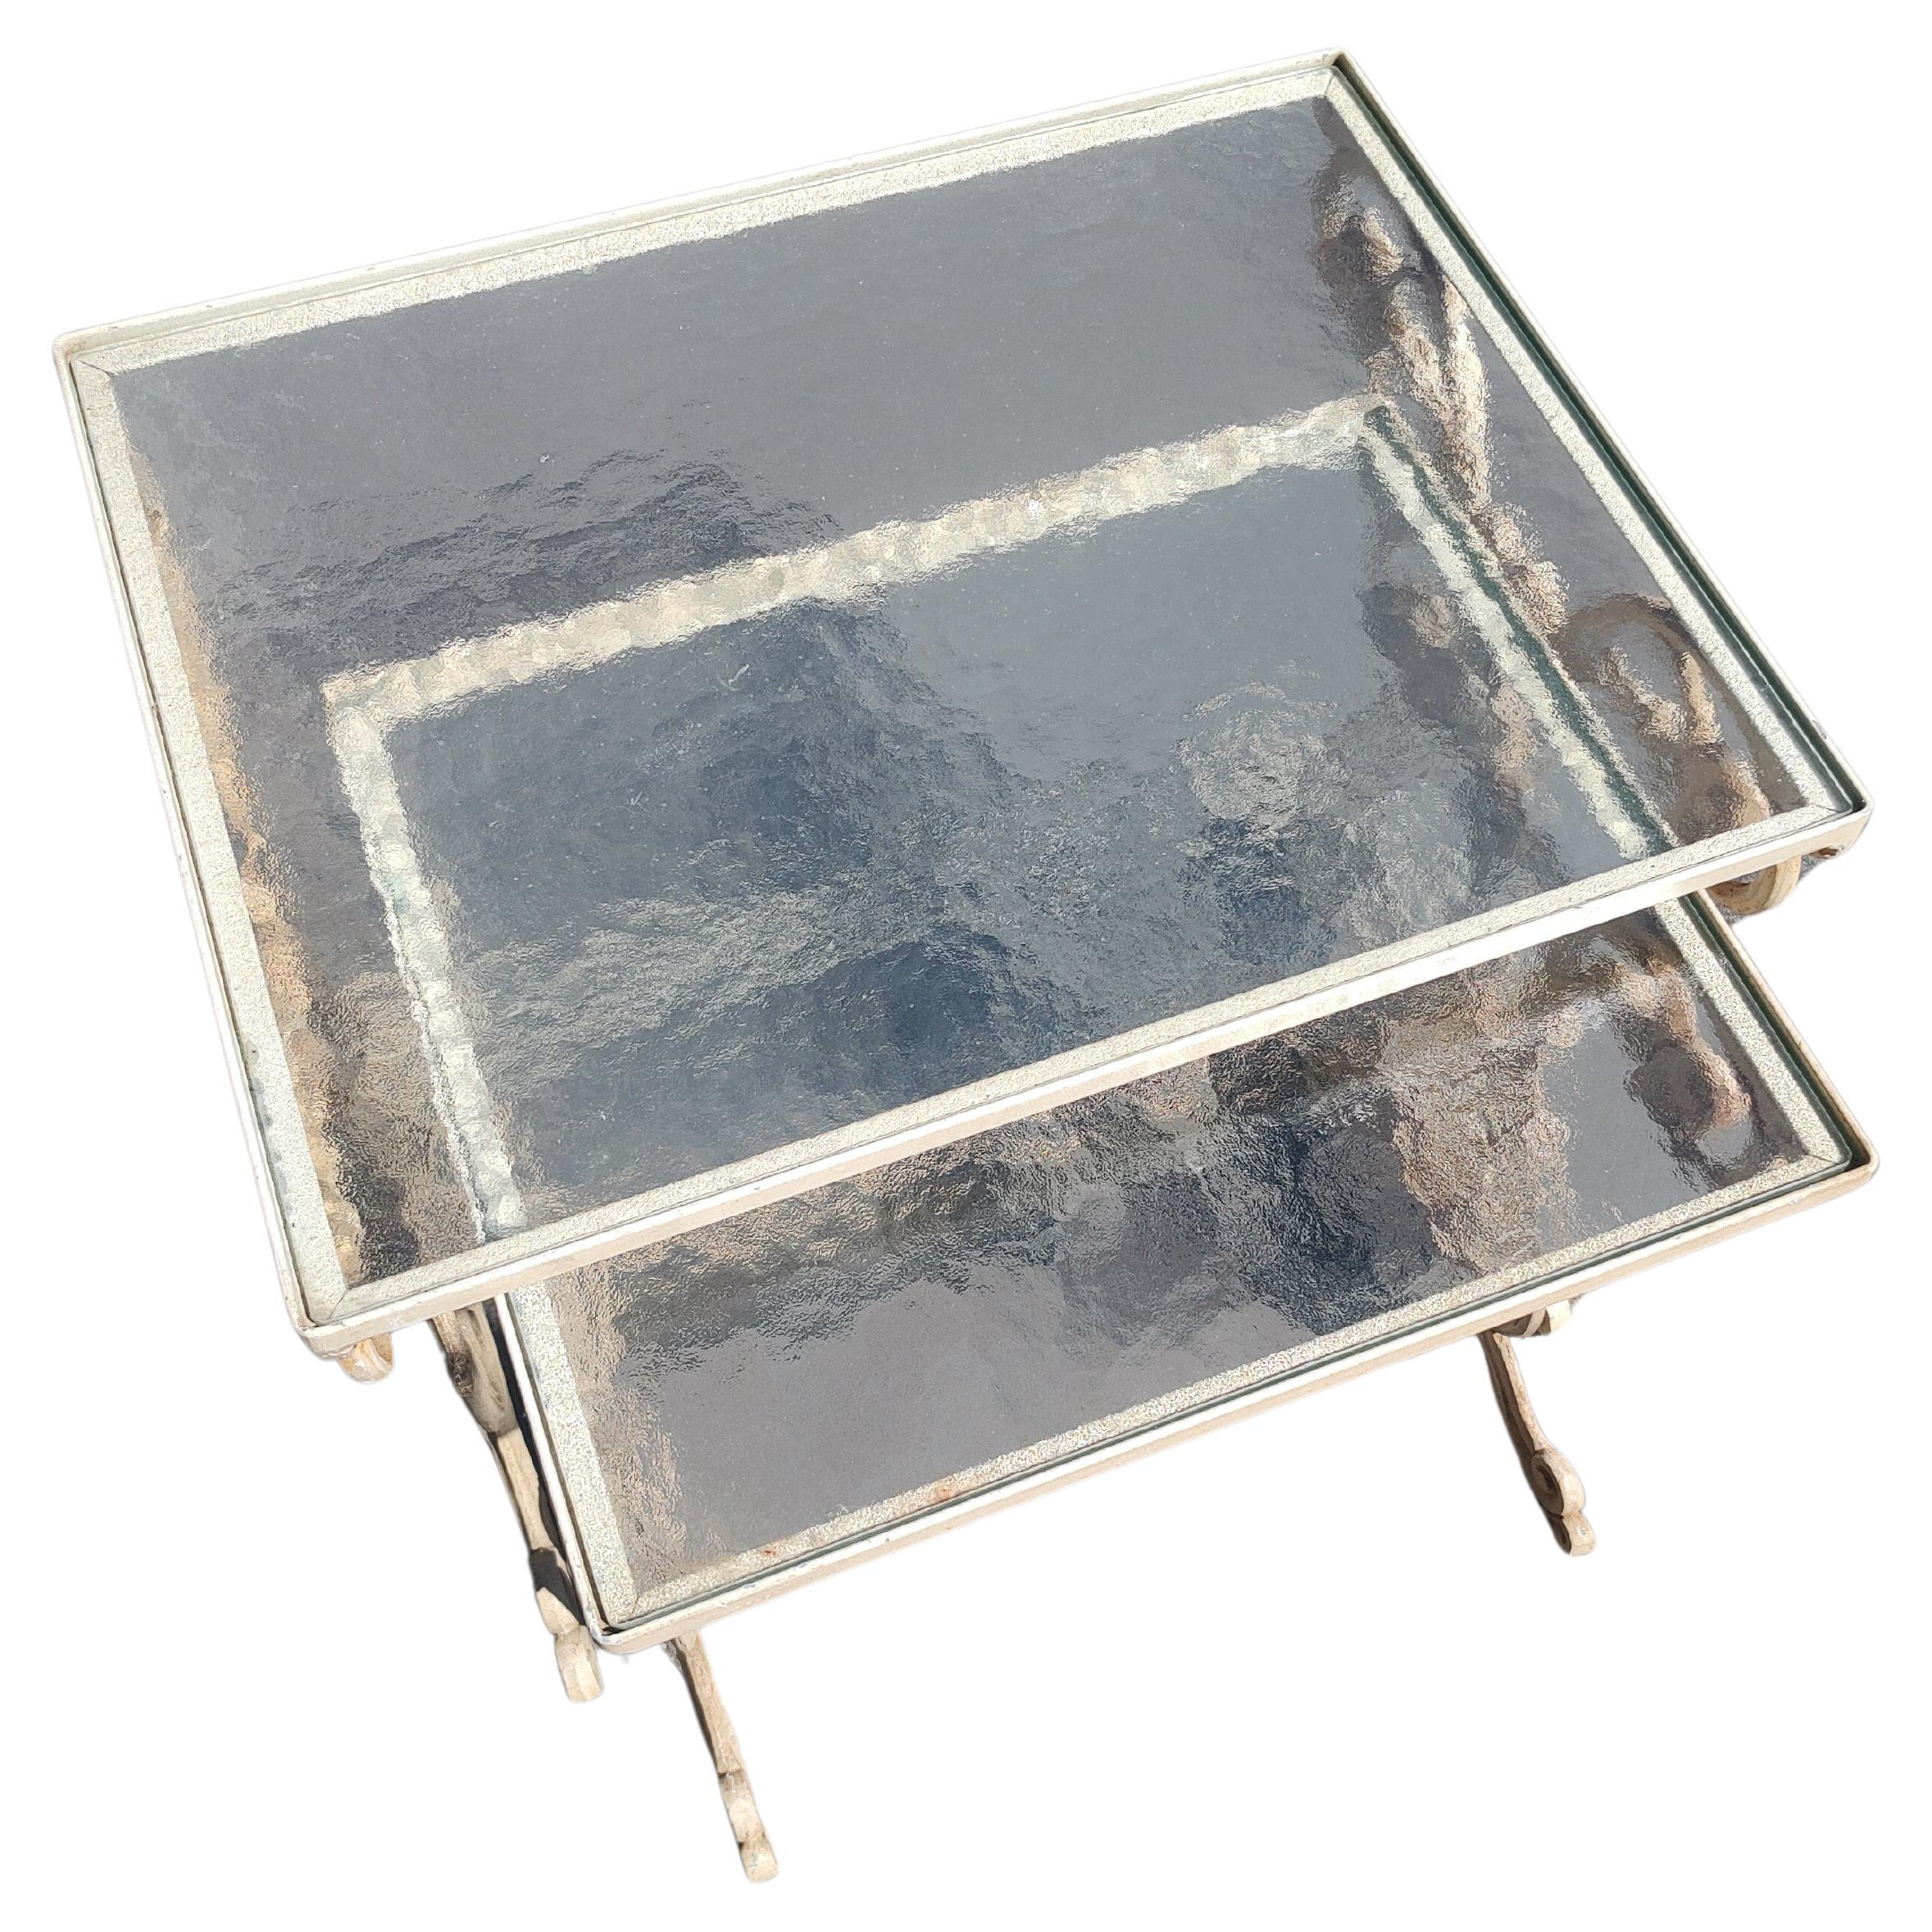 Fabelhaftes Paar Stapeltische aus Aluminiumguss von Molla mit undurchsichtigen Glasplatten. Kleinerer Tisch ist 14,25 x 16,25 x 17h. In ausgezeichnetem Vintage-Zustand mit minimalen Gebrauchsspuren. Glas ist perfekt.